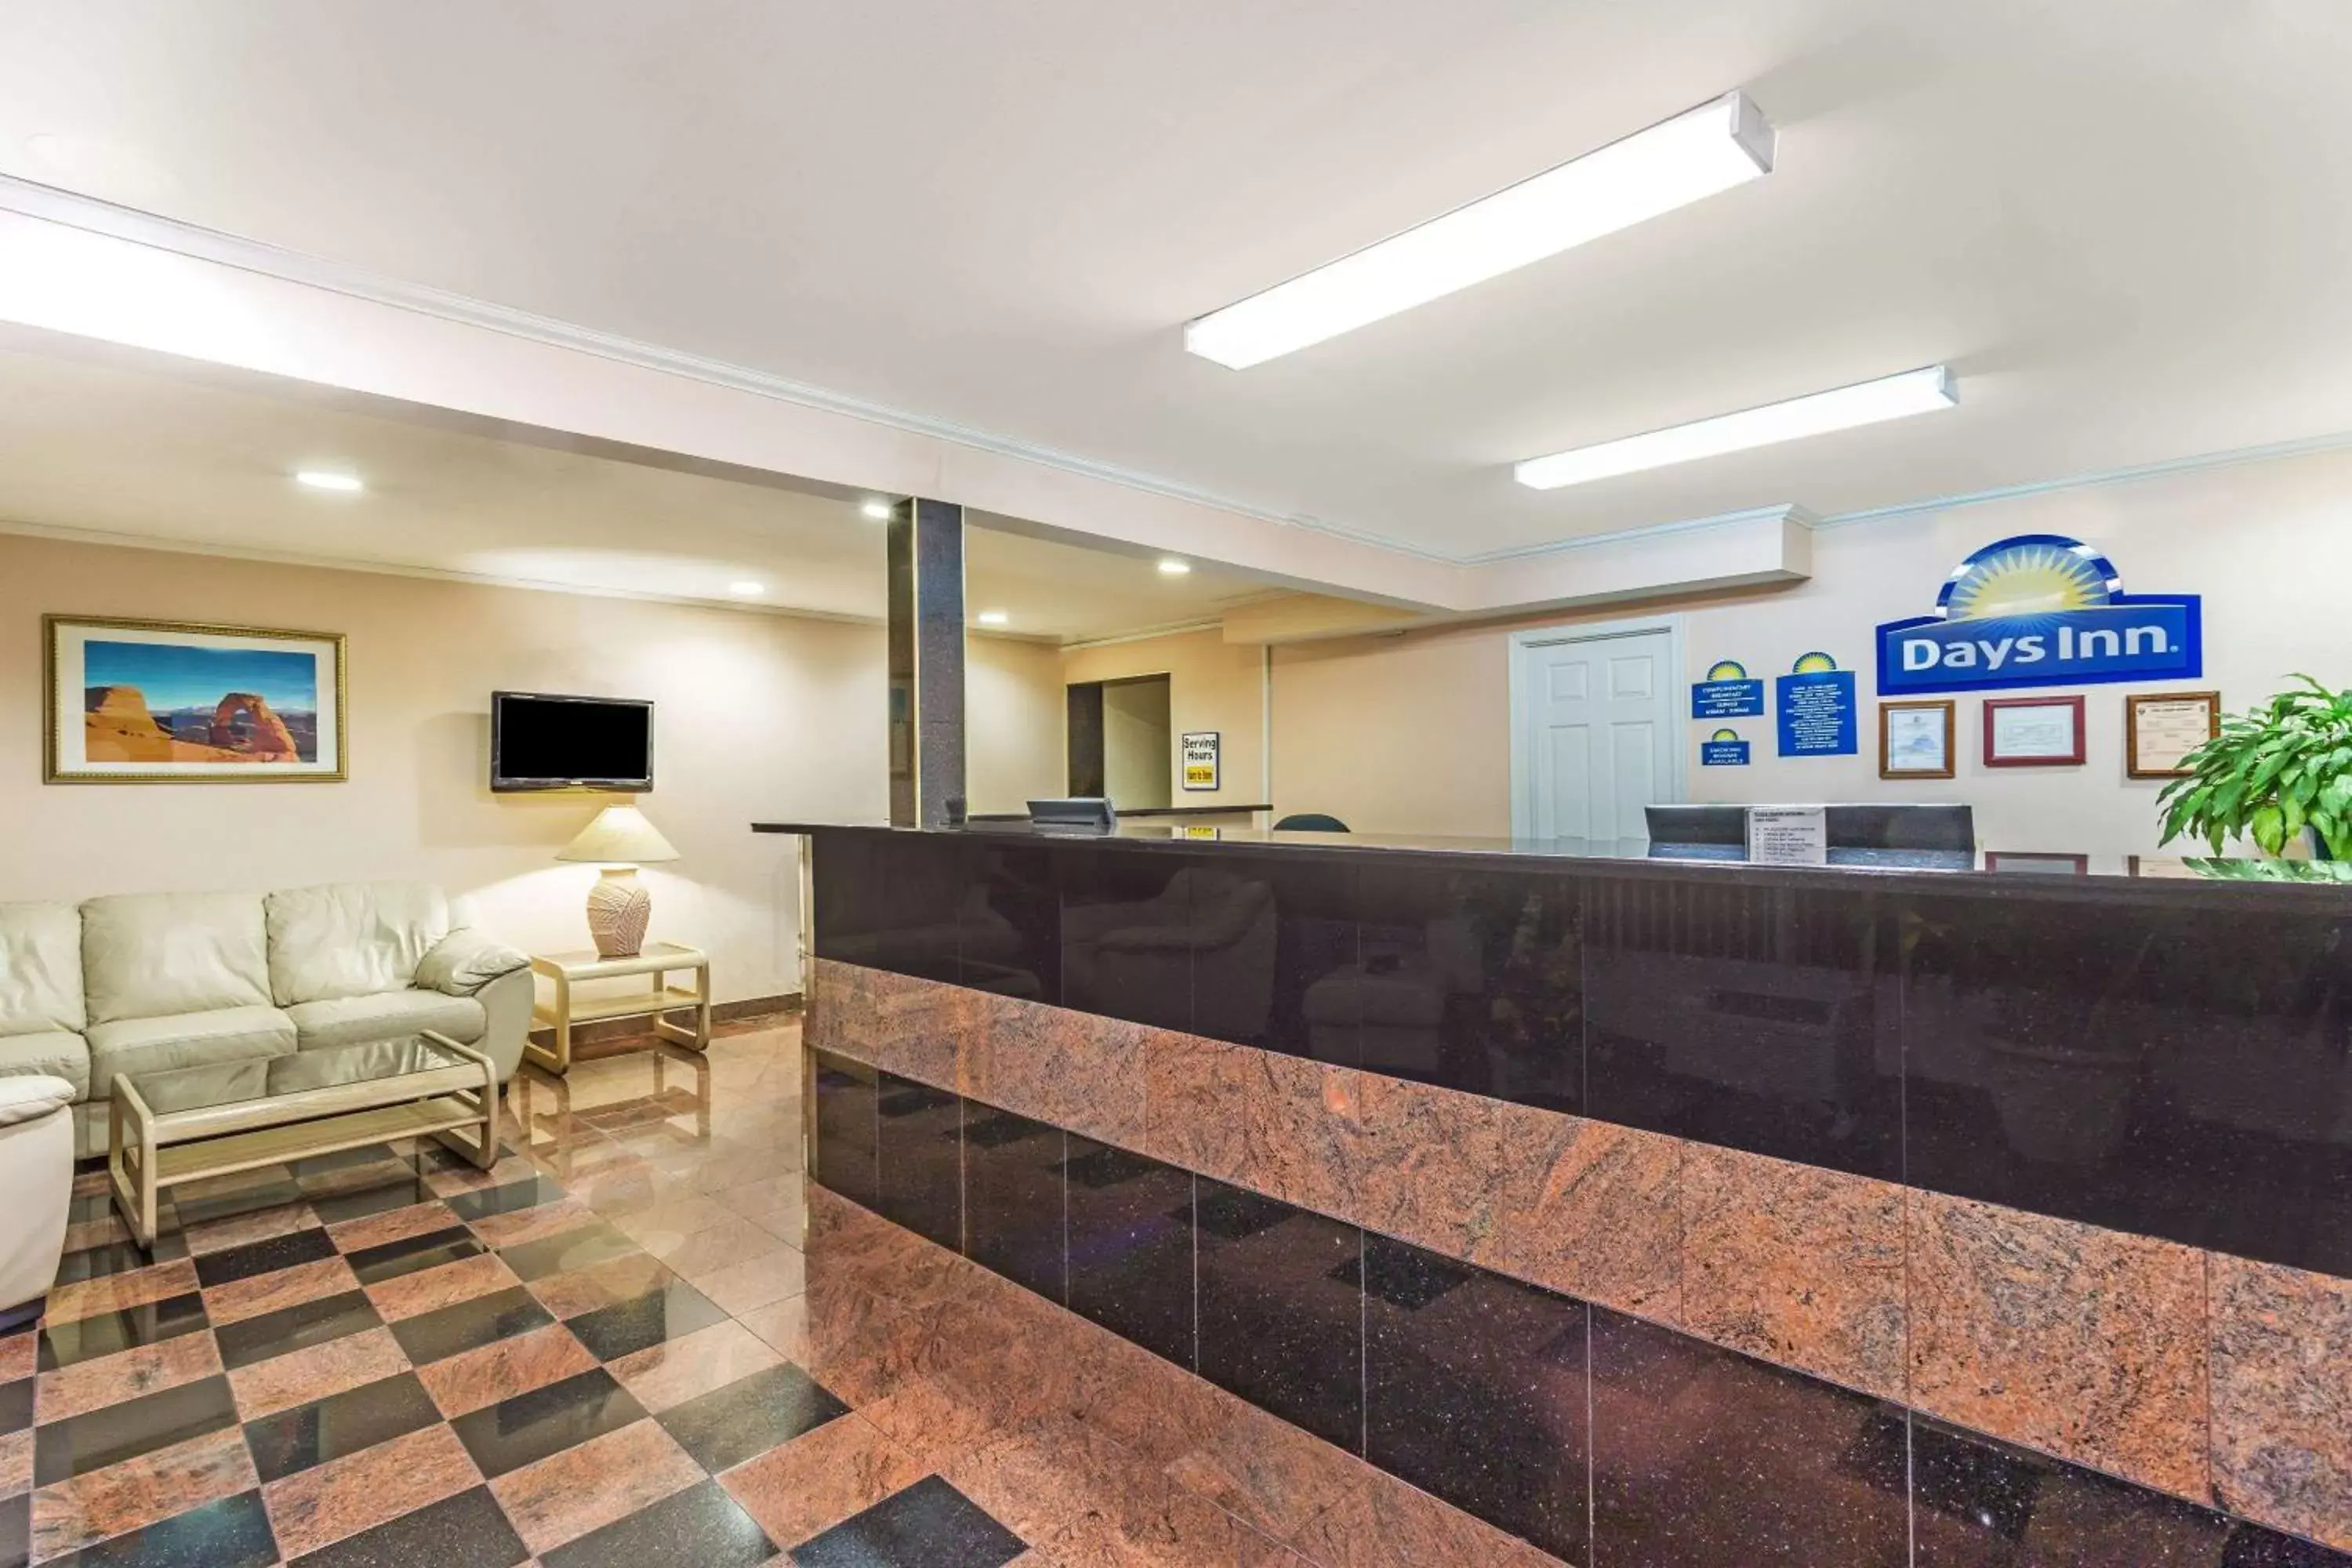 Lobby or reception, Lobby/Reception in Days Inn by Wyndham Ashland